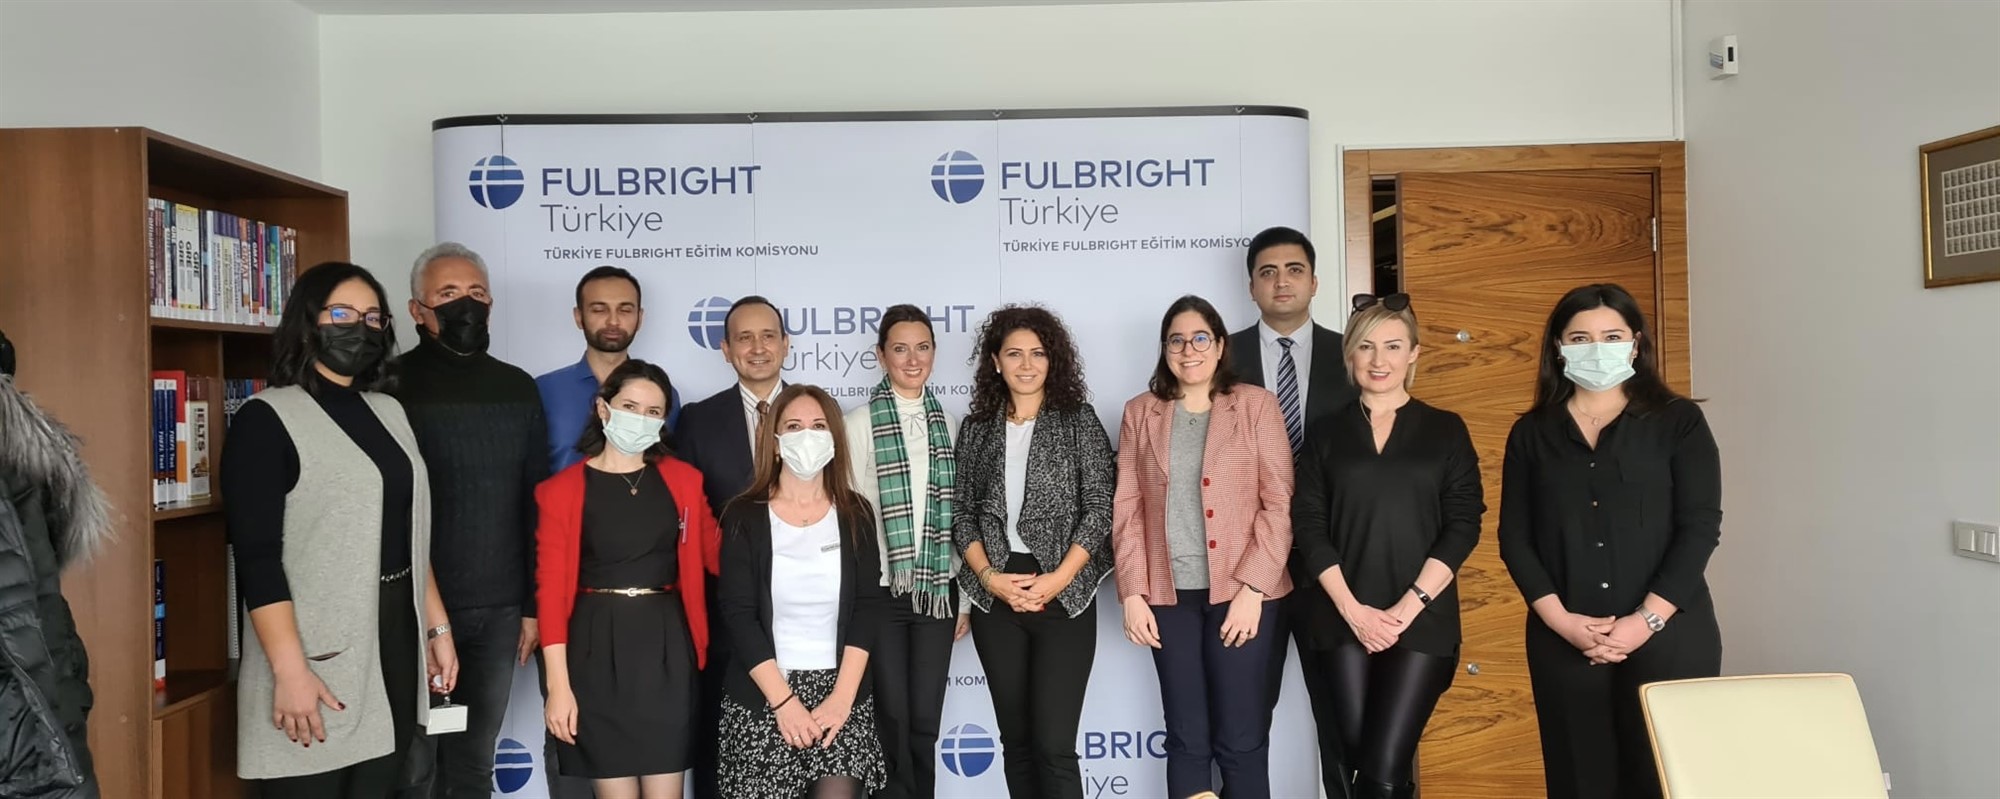 Ankara Fulbright Eğitim Komisyonu Ziyareti ve Mezunlar Buluşması